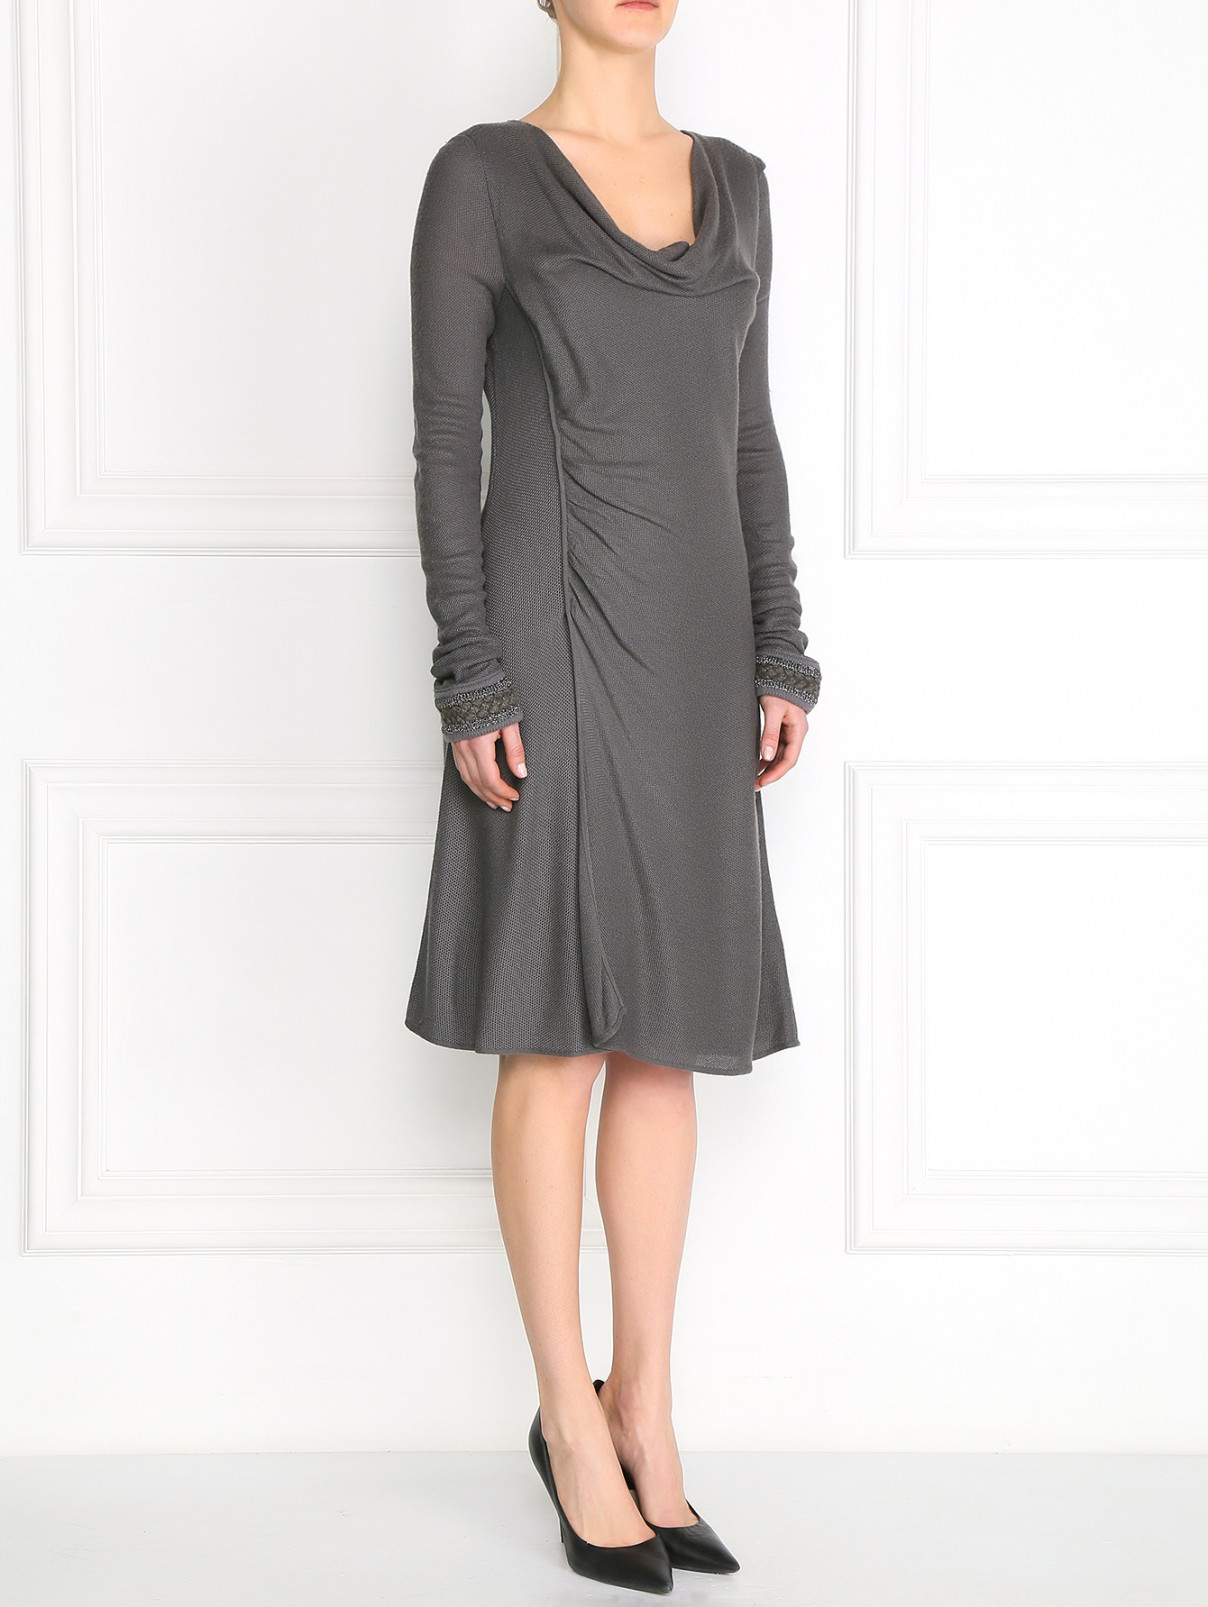 Платье с драпировкой Emporio Armani  –  Модель Общий вид  – Цвет:  Серый